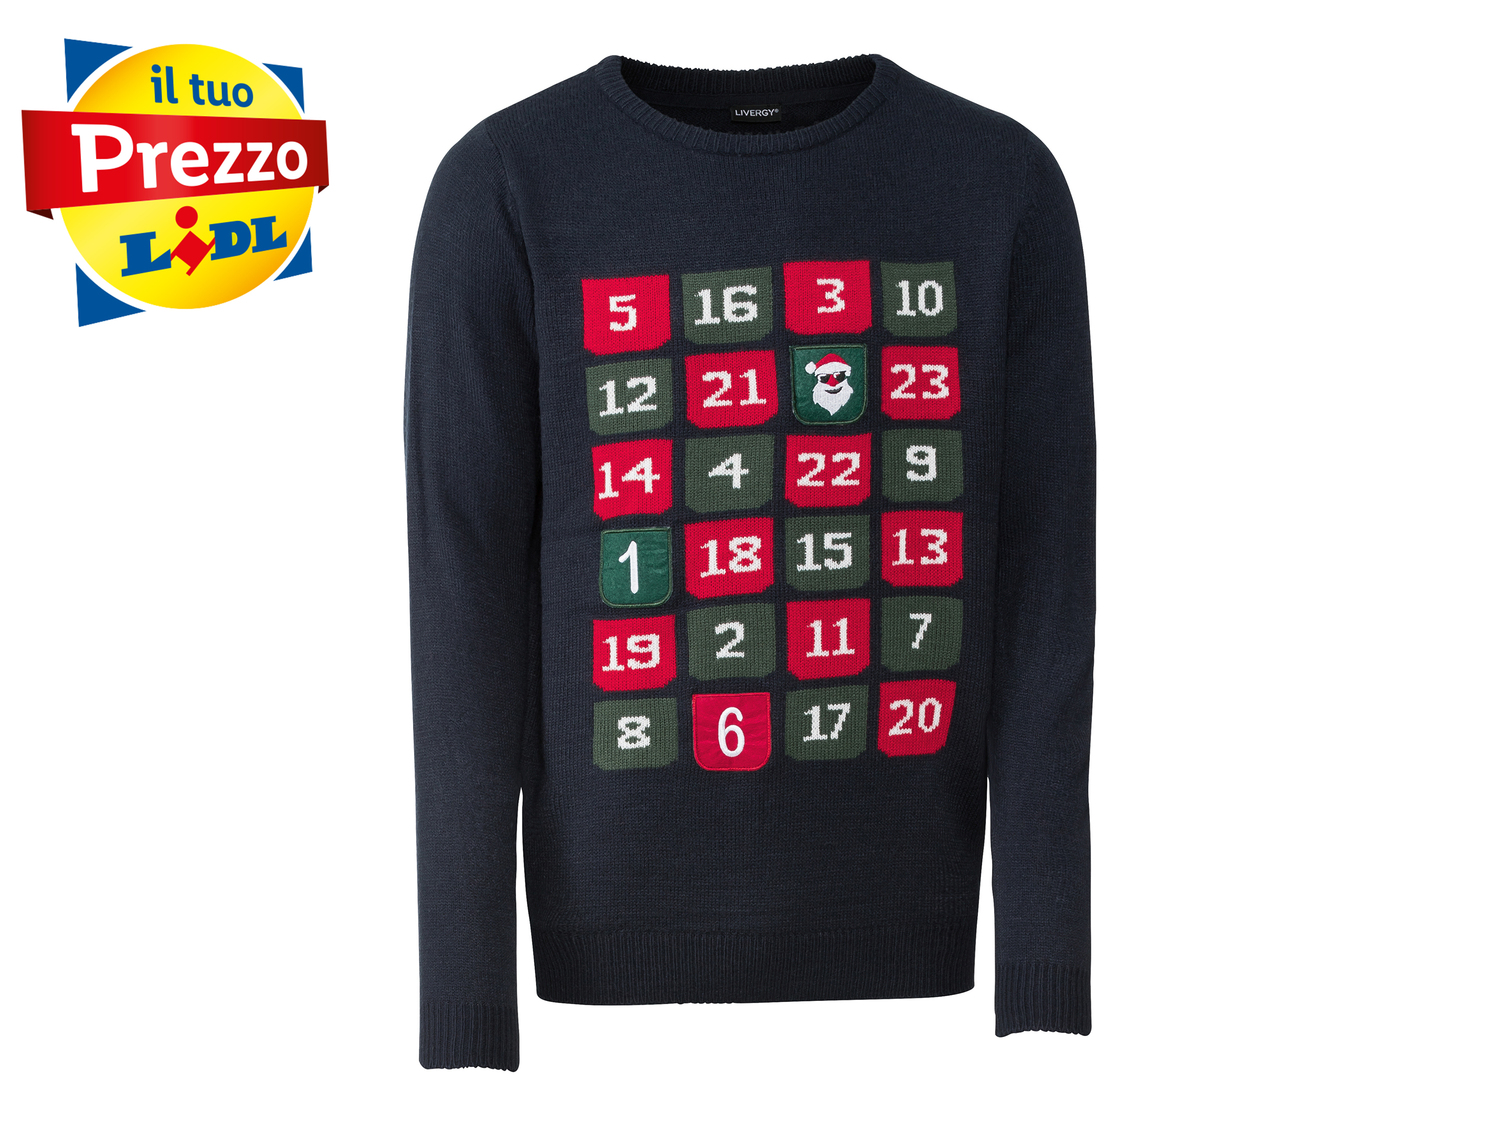 Pullover natalizio da uomo Livergy, prezzo 9.99 € 
Misure: S-XL
Taglie disponibili

Caratteristiche

- ...